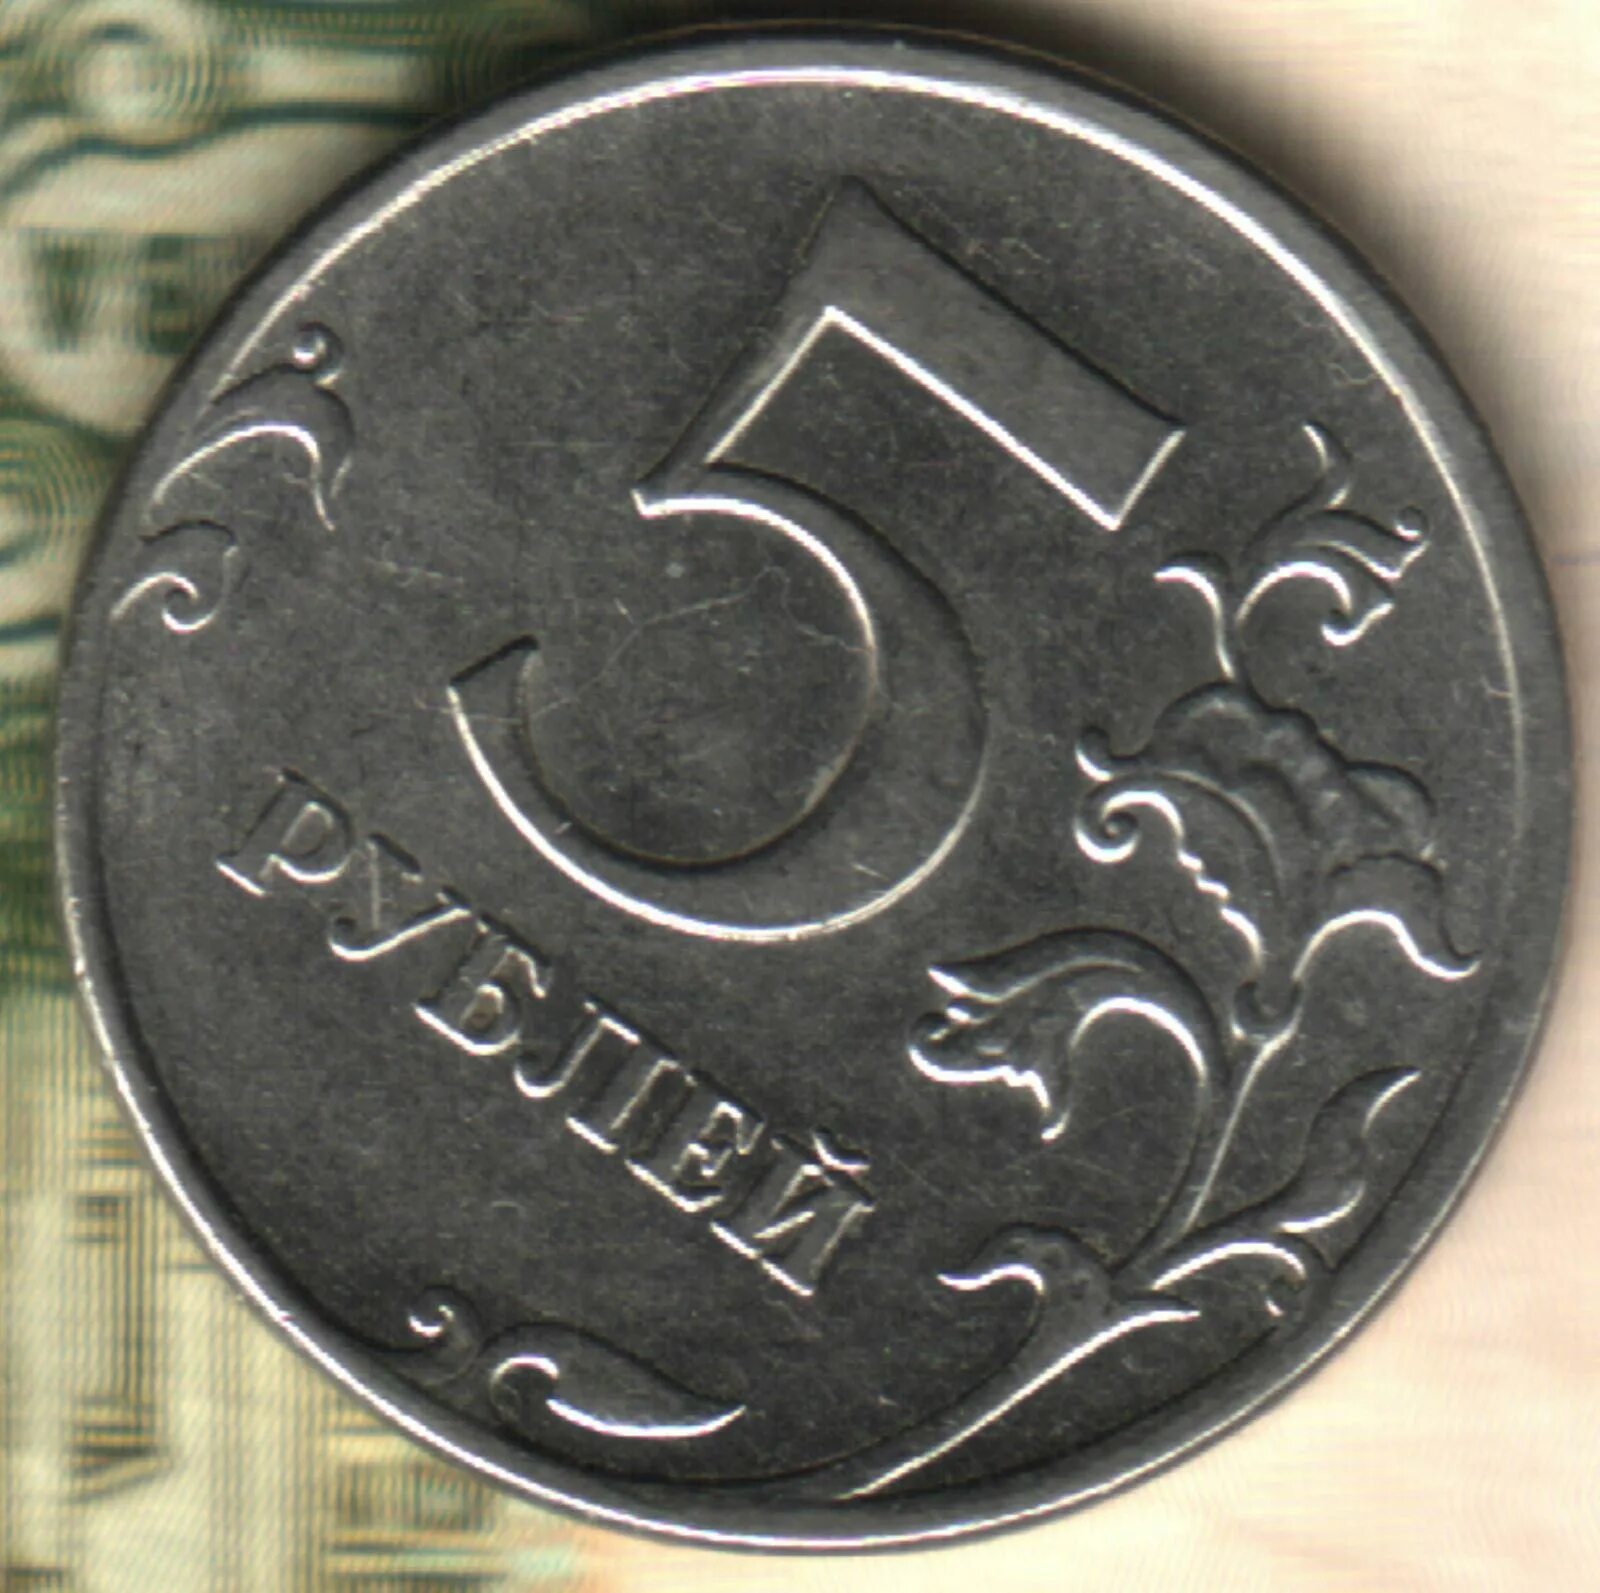 5 Рублей 2012 ММД. Монета 5 рублей Аверс и реверс. Брак 5 рублевой монеты. 5 Рублей 2019.